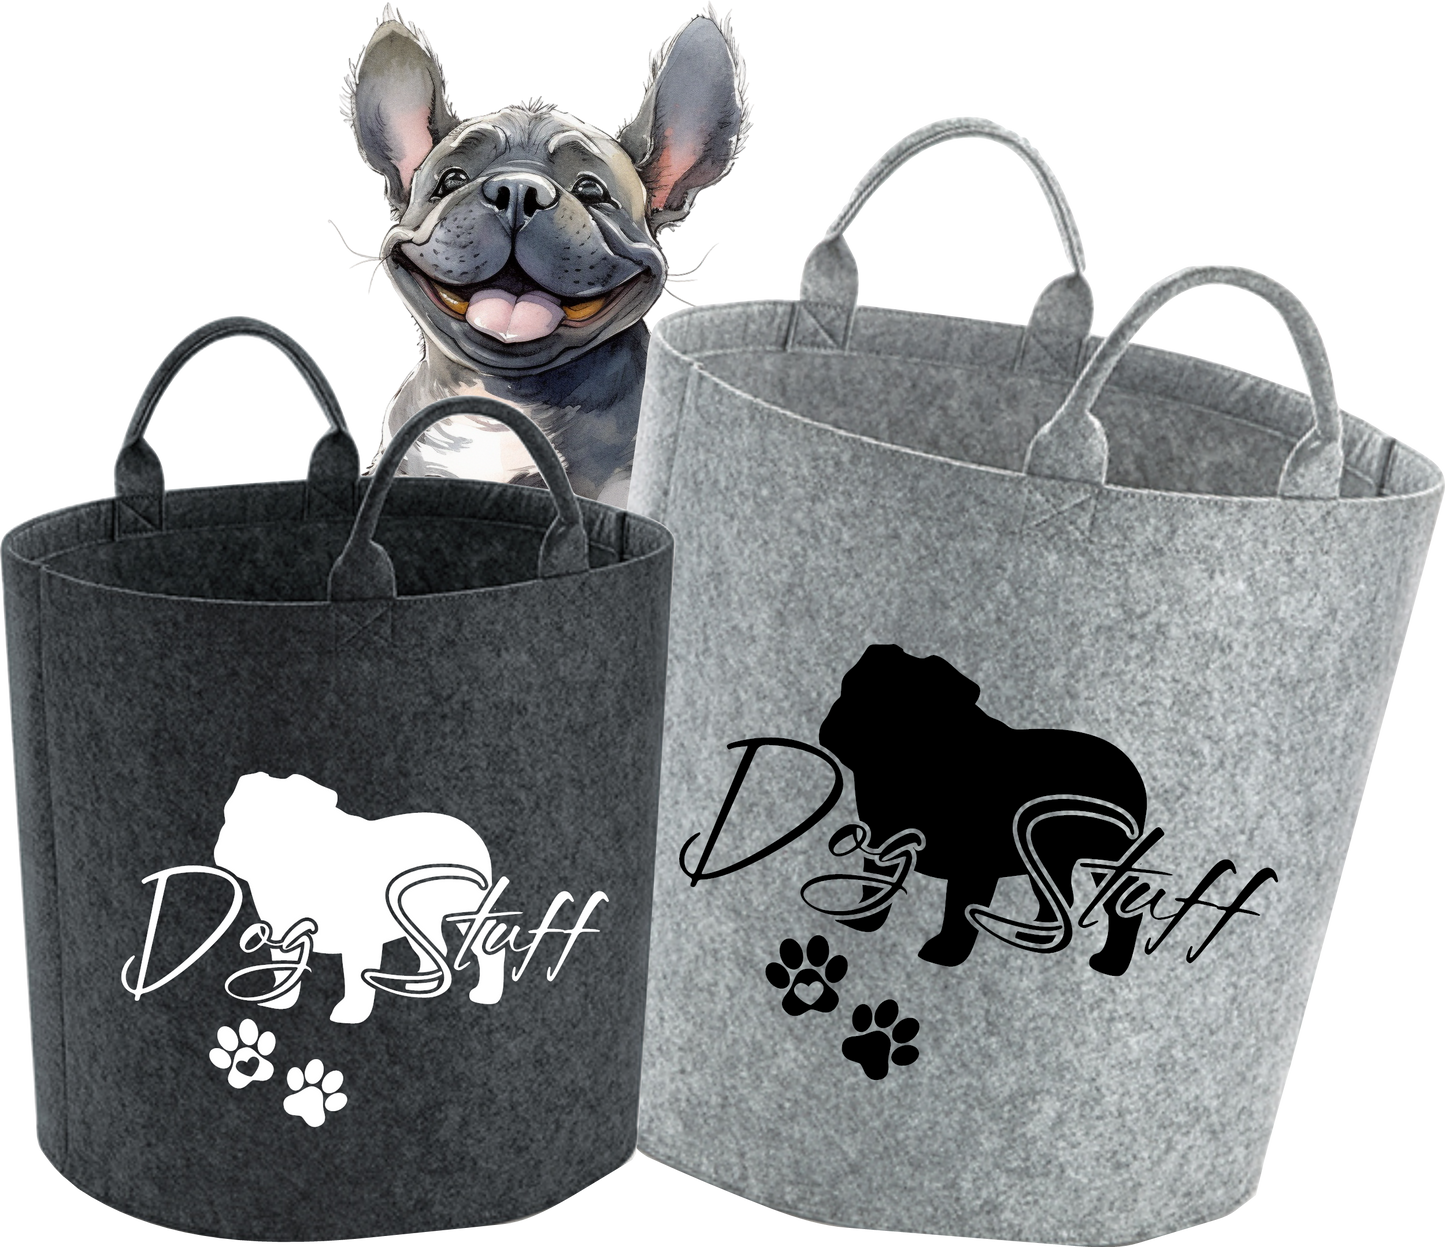 Dog Stuff Bag, Hunde Tasche, Spielzeugaufbewahrung, Filz